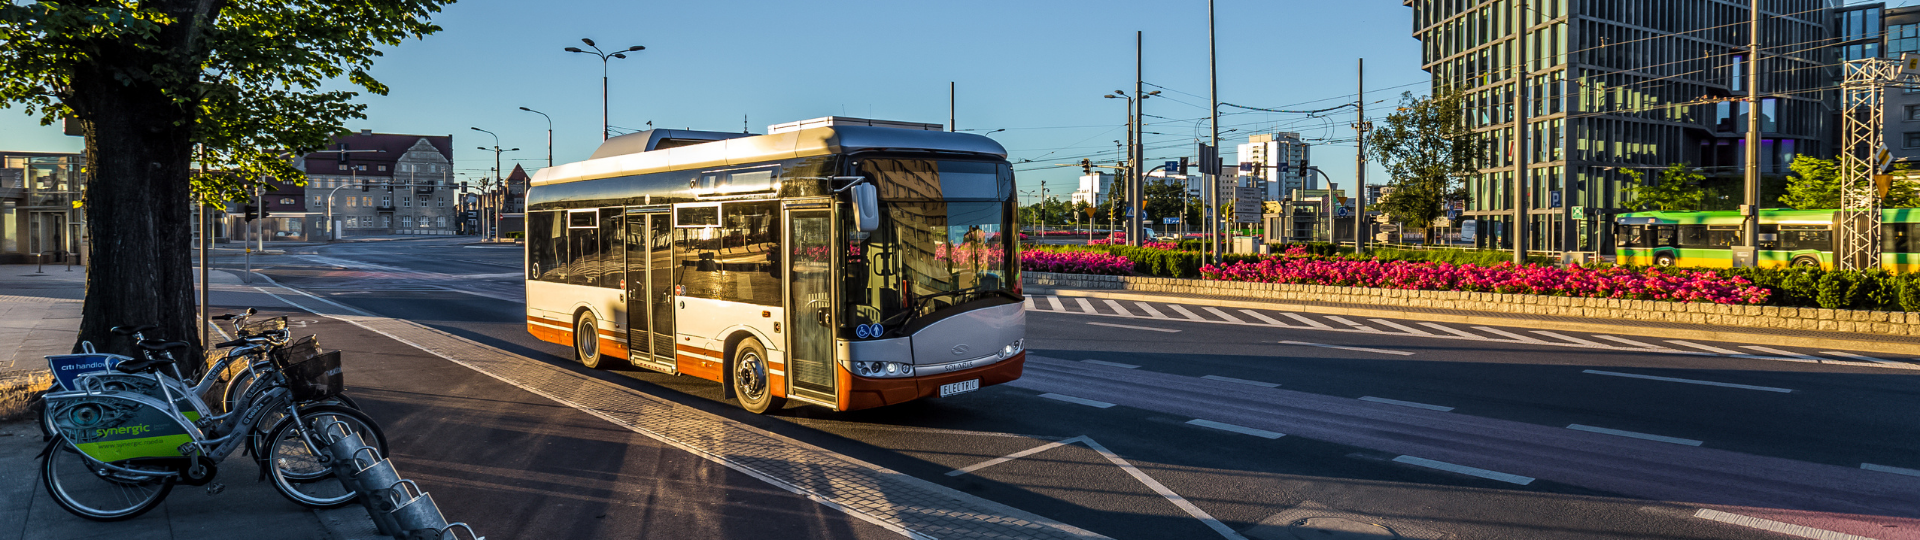 New Solaris buses in Spain